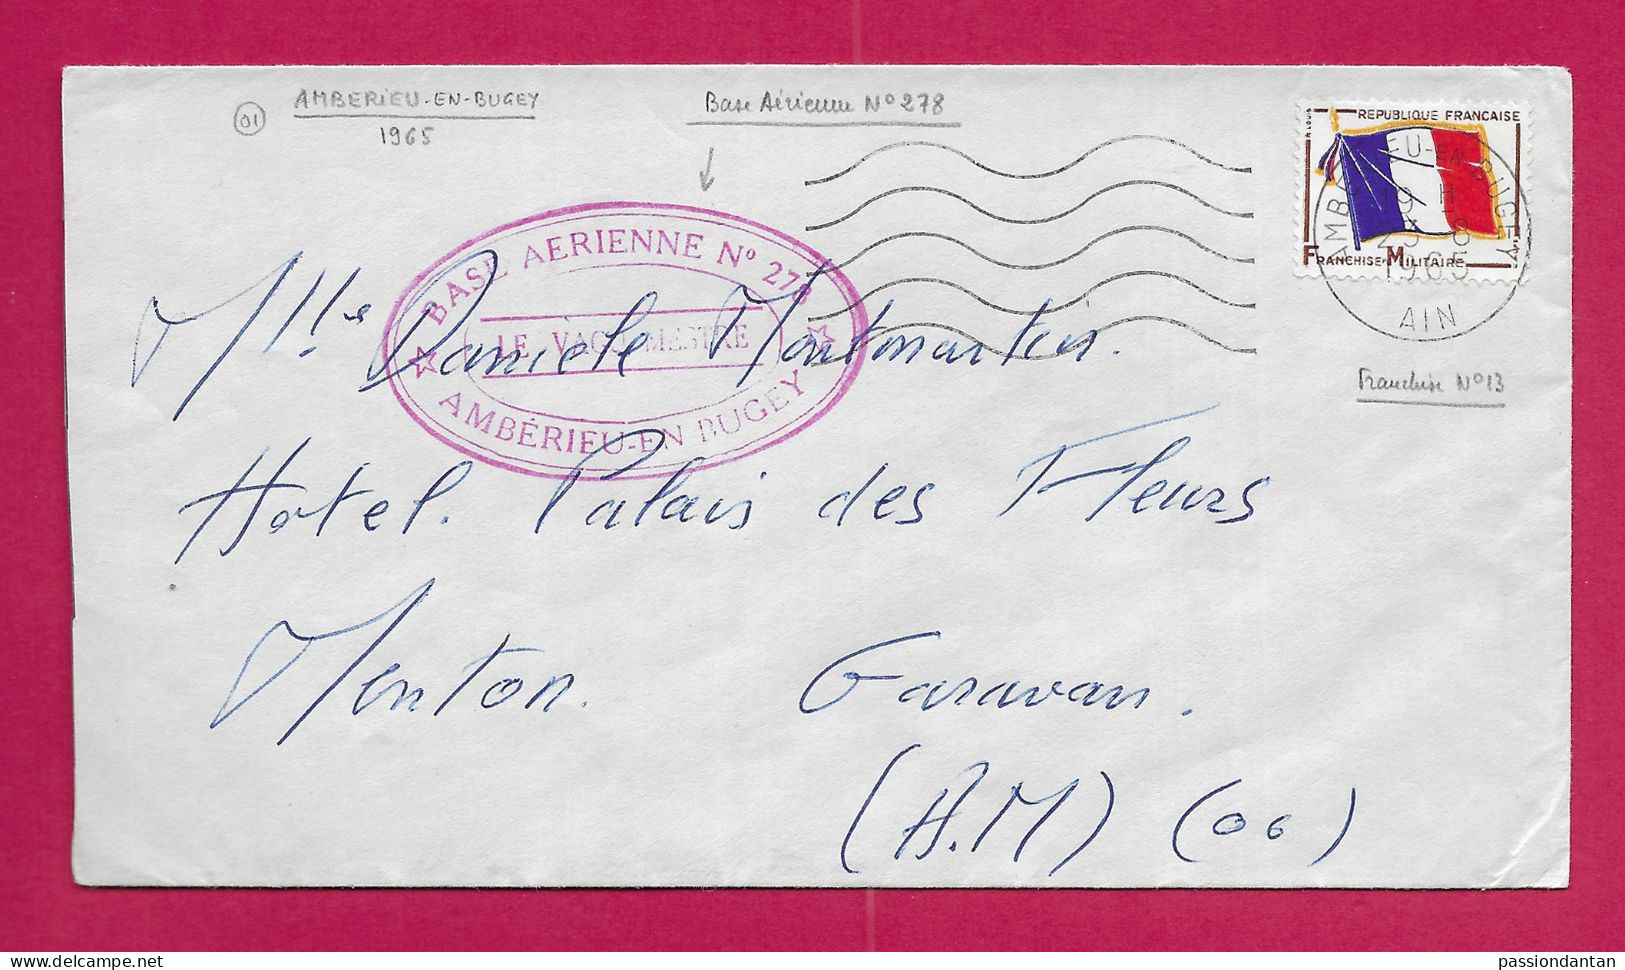 Enveloppe Datée De 1965 - Timbre Humide Base Aérienne N° 278 à Ambérieu En Bugey Dans L'Ain - Militaire Luchtpost